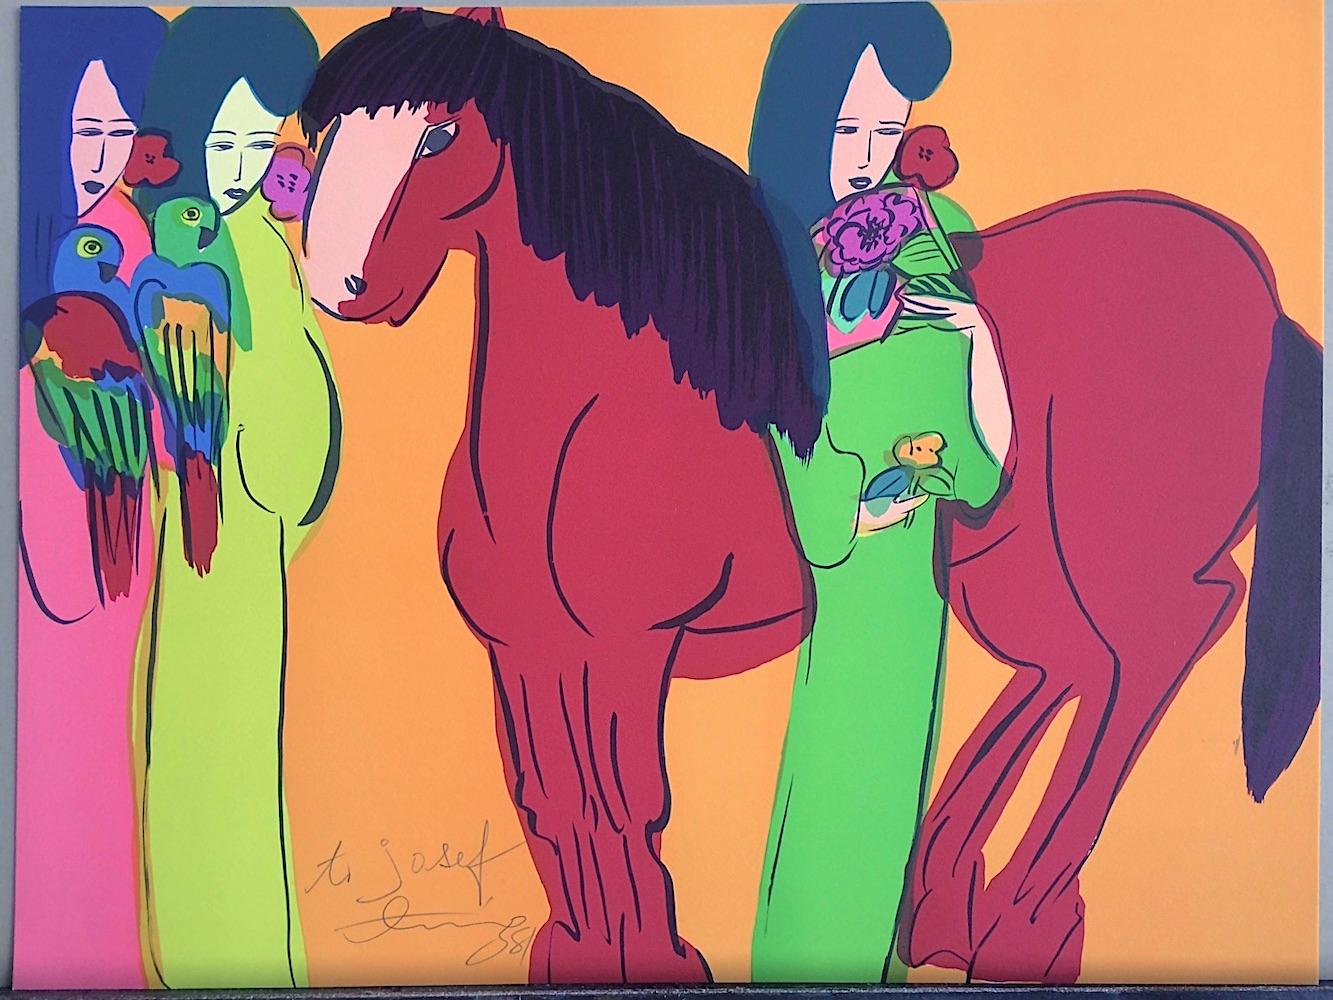 RED HORSE ON ORANGE, THREE GEISHAS, signierte Lithographie, asiatische Frauen, Papageien, Fächer (Orange), Animal Print, von Walasse Ting